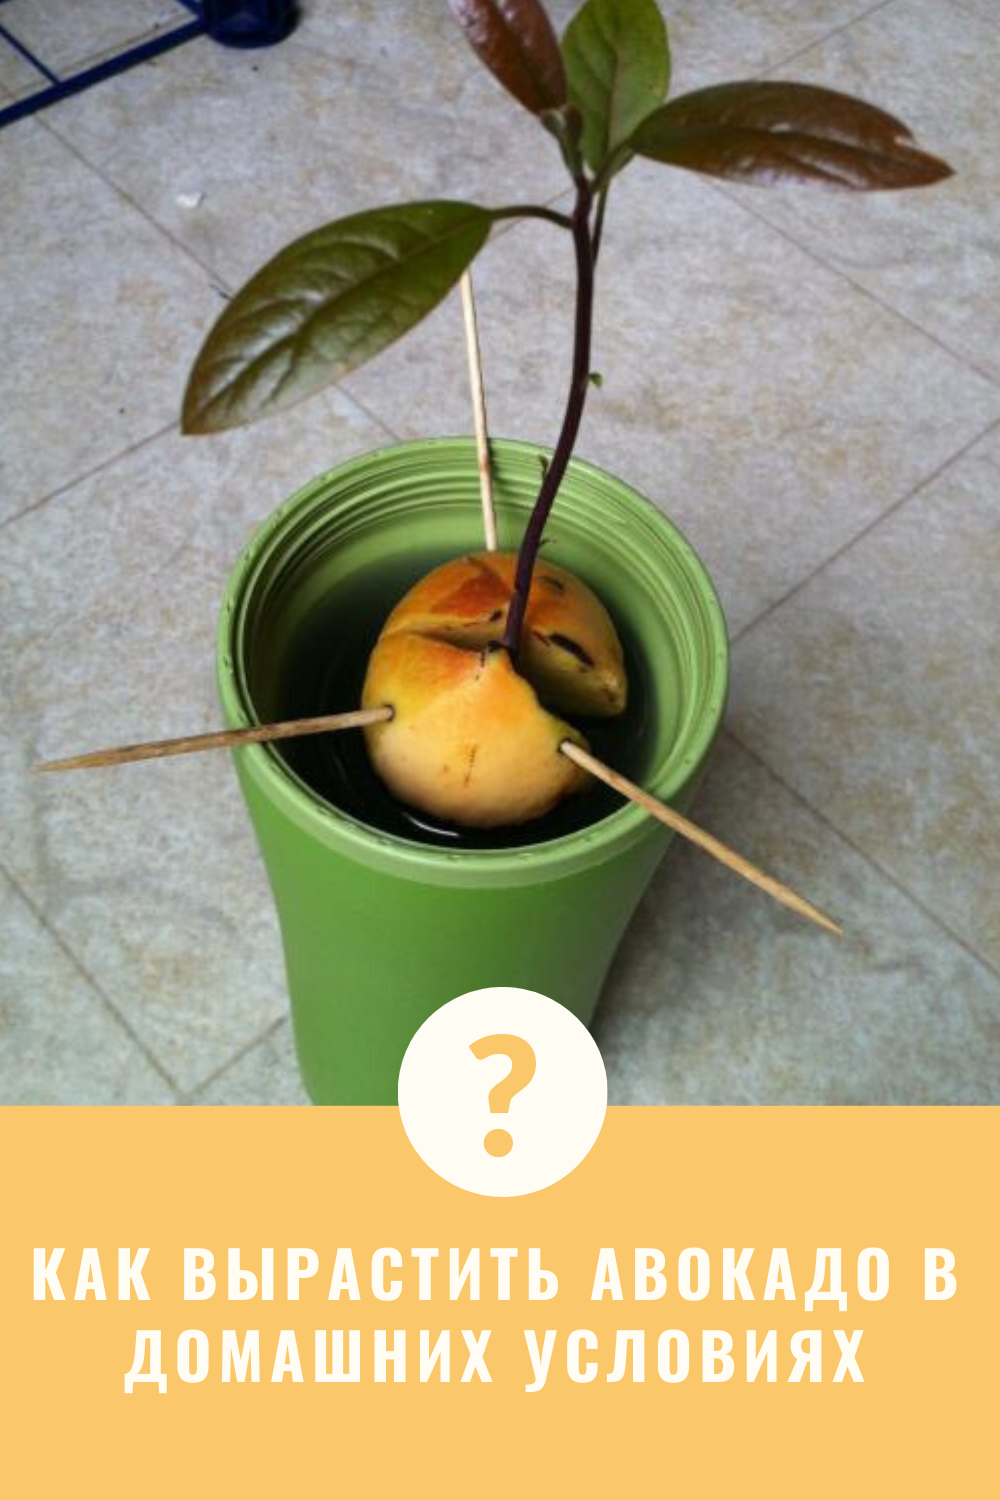 Выбор и подготовка семян авокадо для посадки